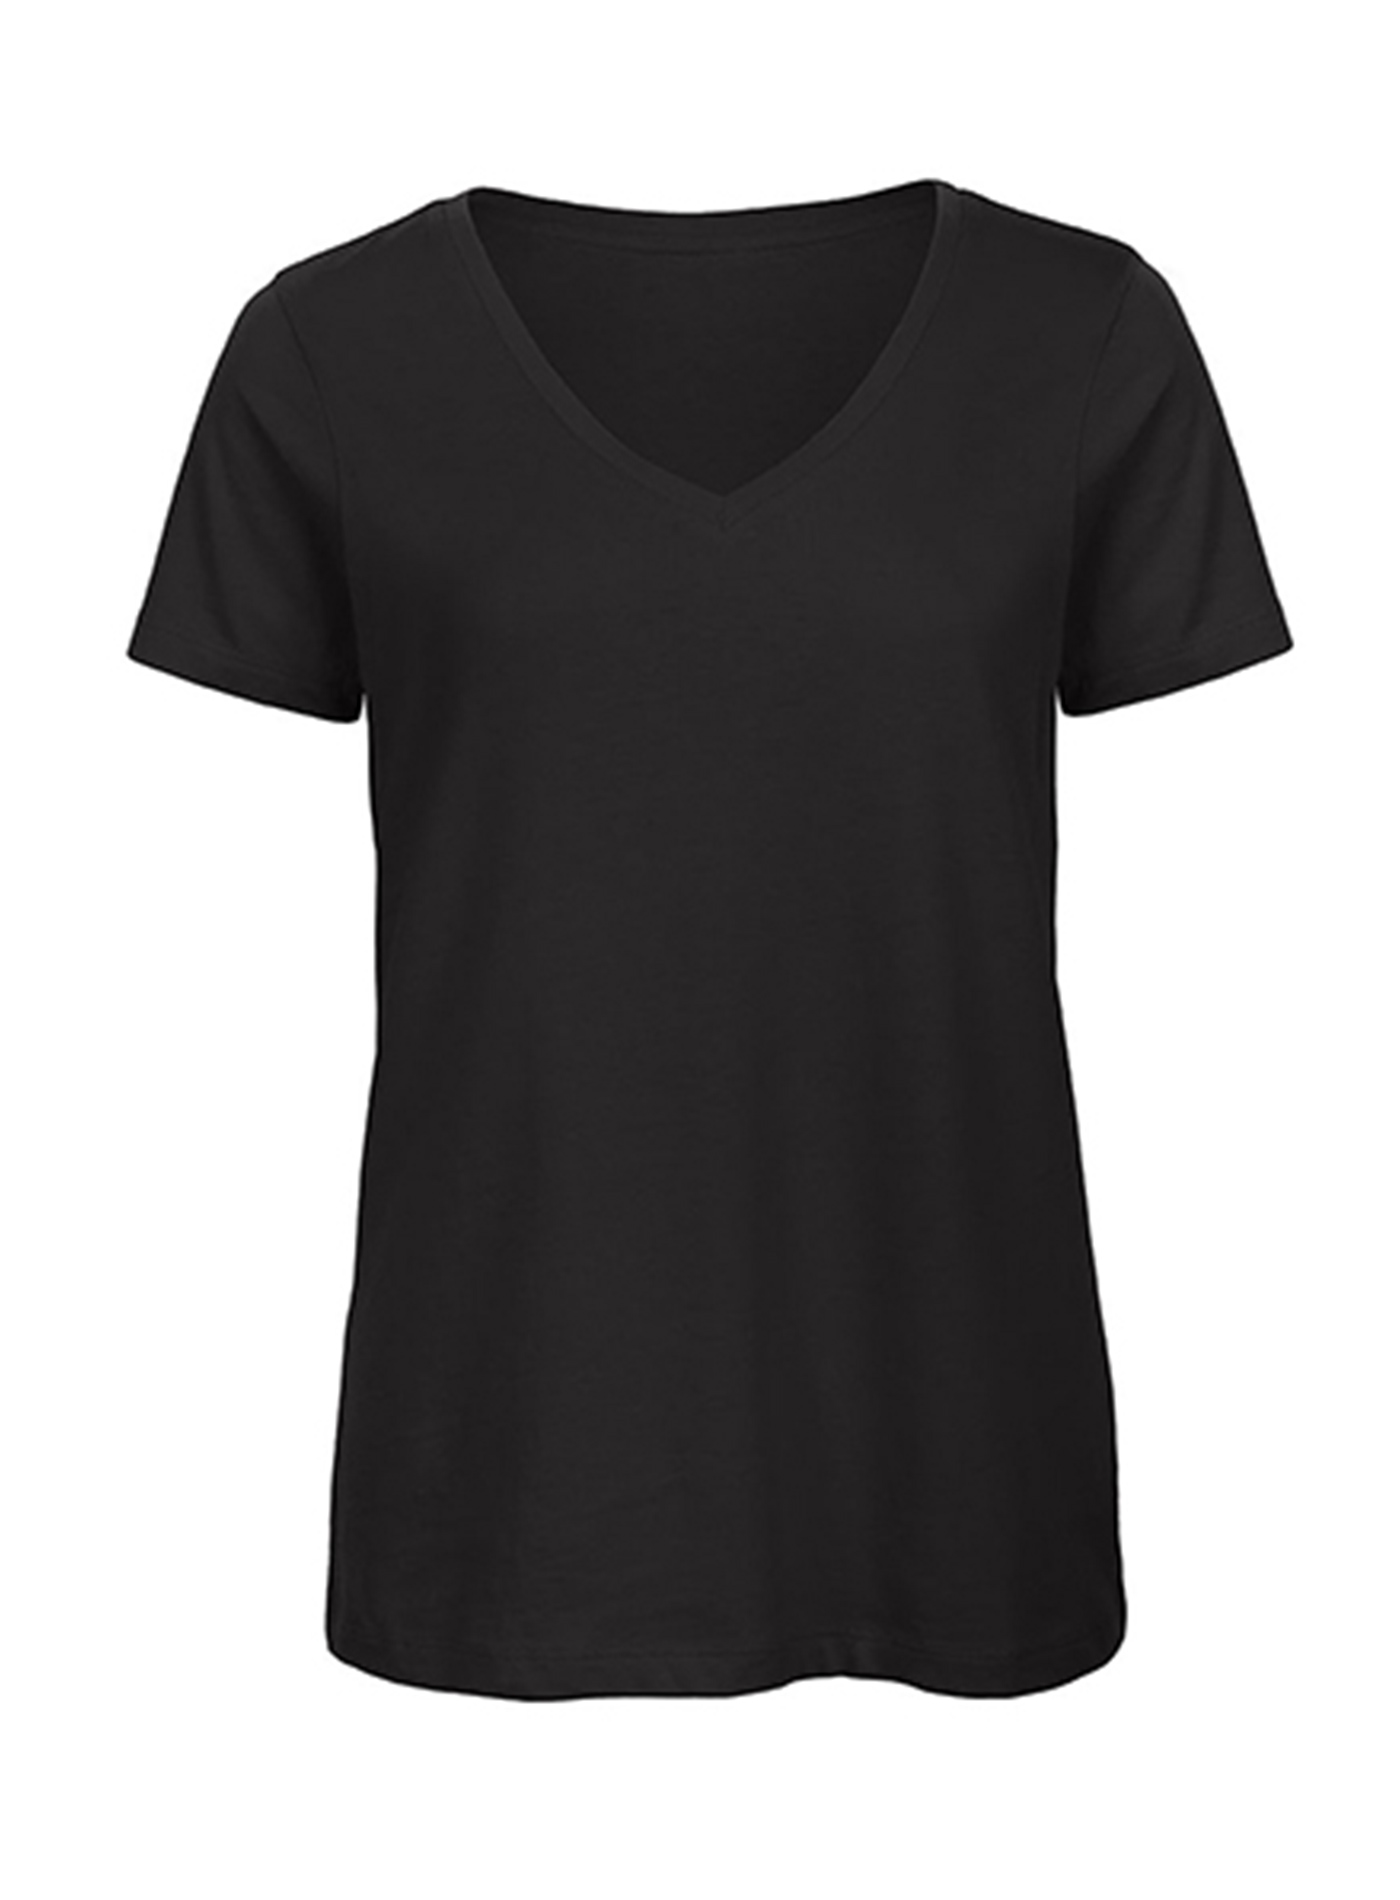 Dámské tričko s výstřihem do V B&C Collection Inspire - černá M